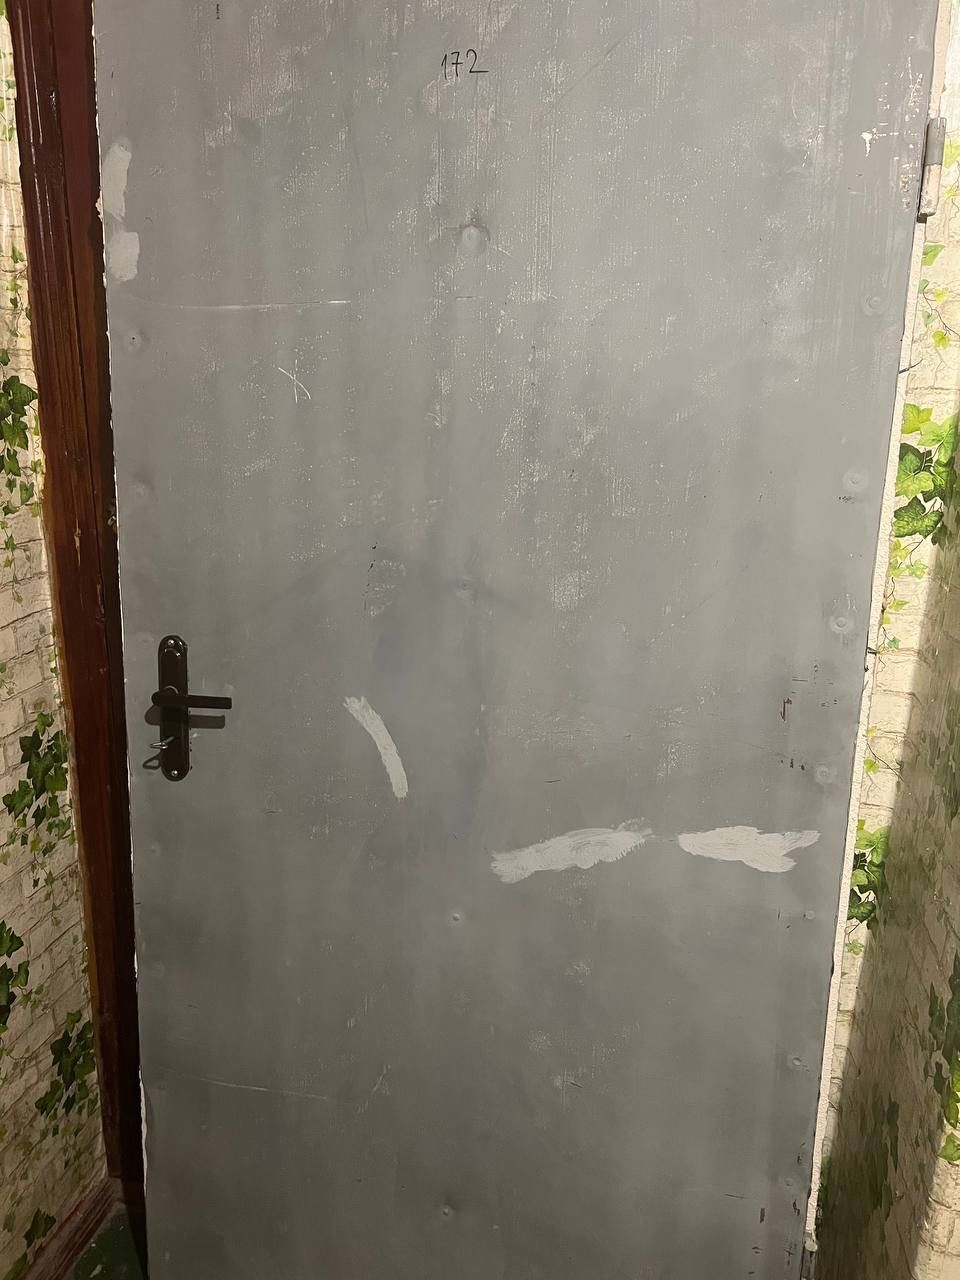 Дверь из металла  размером 2 на 1 метр